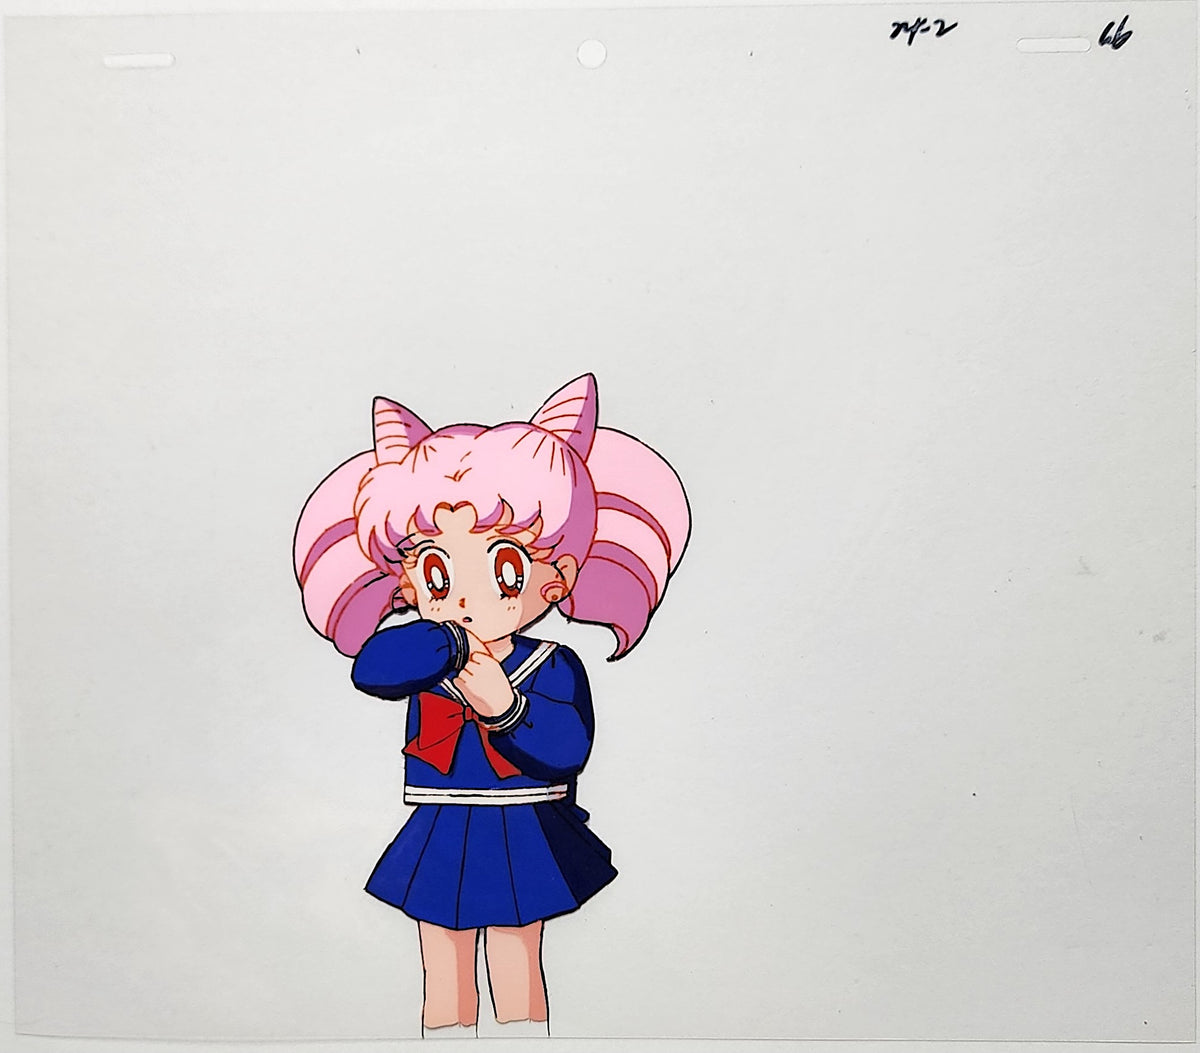 Sailor Moon Animation Production Cel Anime Genga Douga: 4578